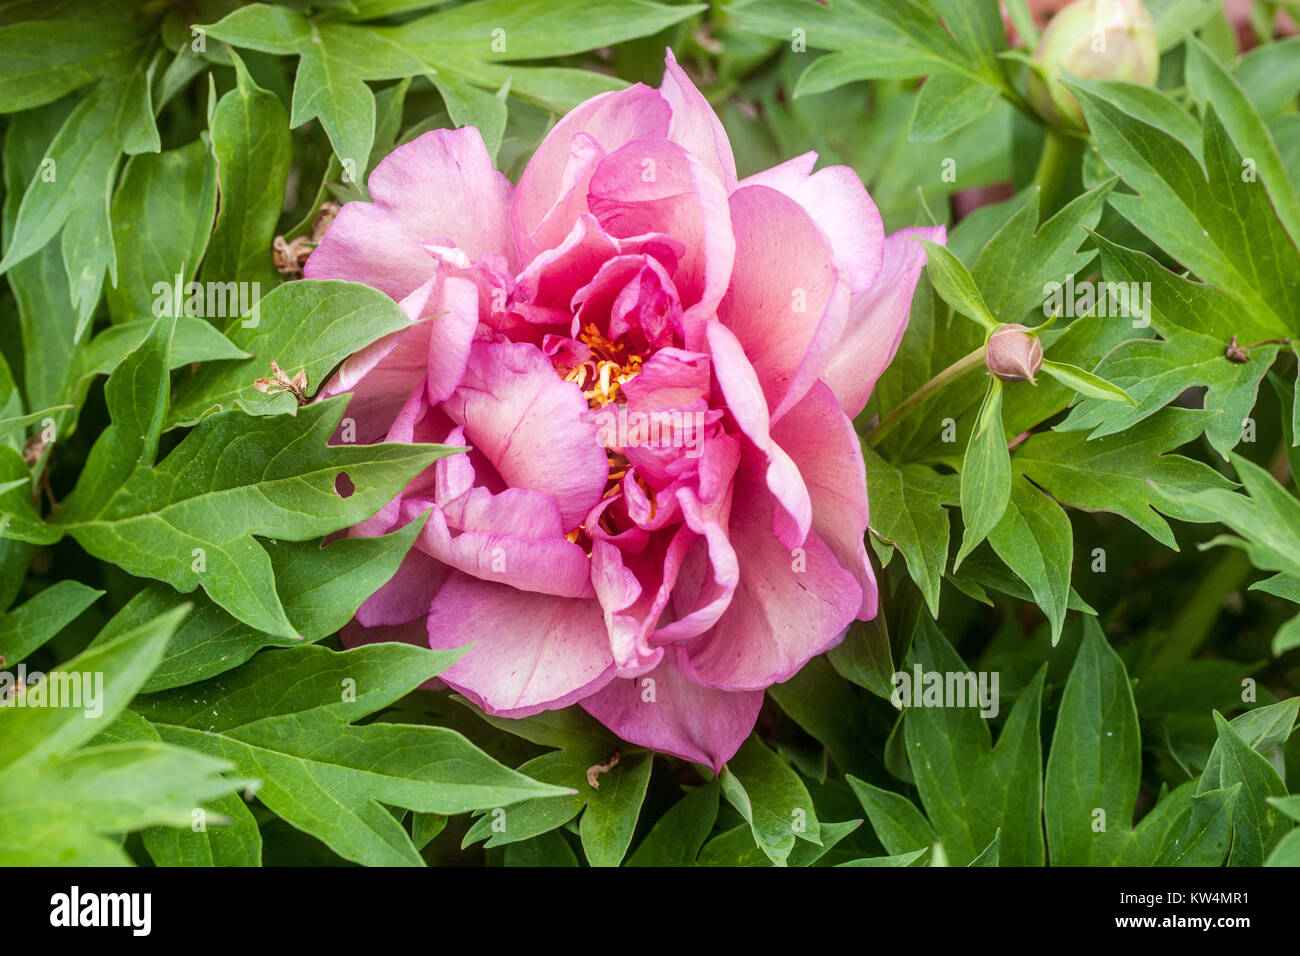 Pink Peony 'Hillary' Paeonia Itoh peony flower, Peonies Stock Photo